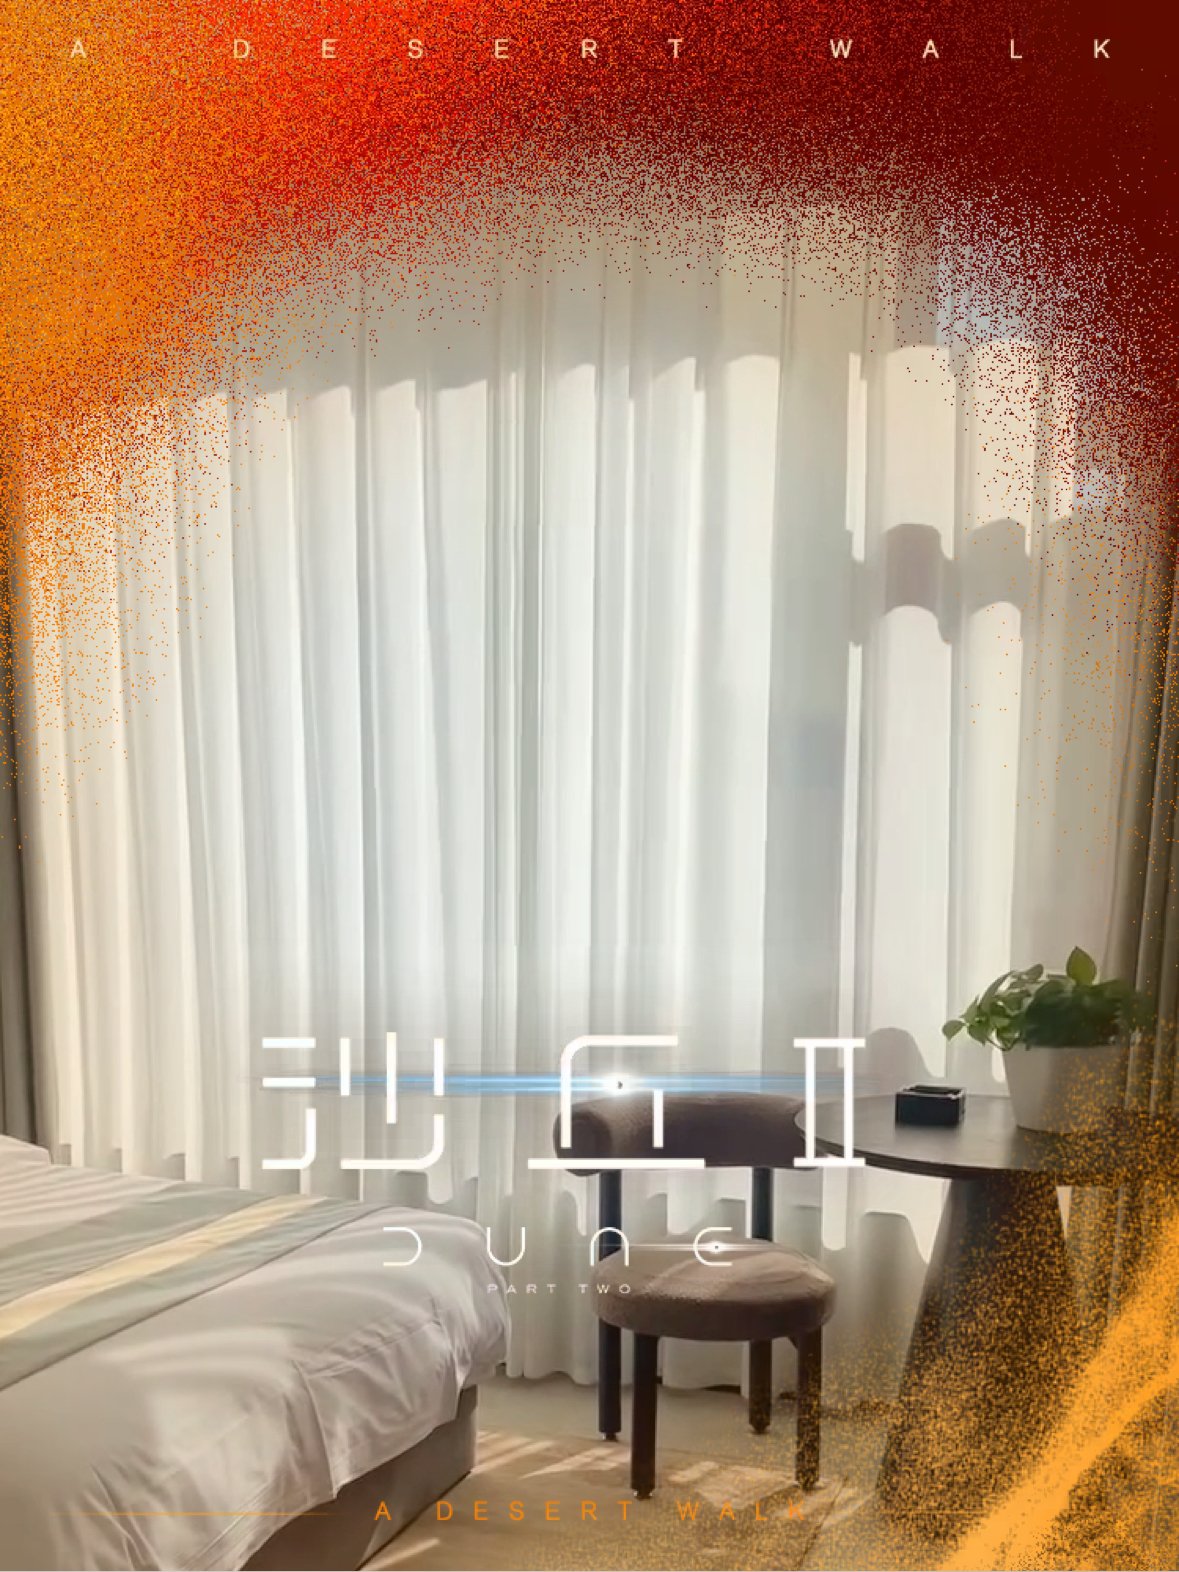 佳木斯富锦市壹号精品酒店各种房型供您选择，还有丰富多样的早餐，欢迎您的到来